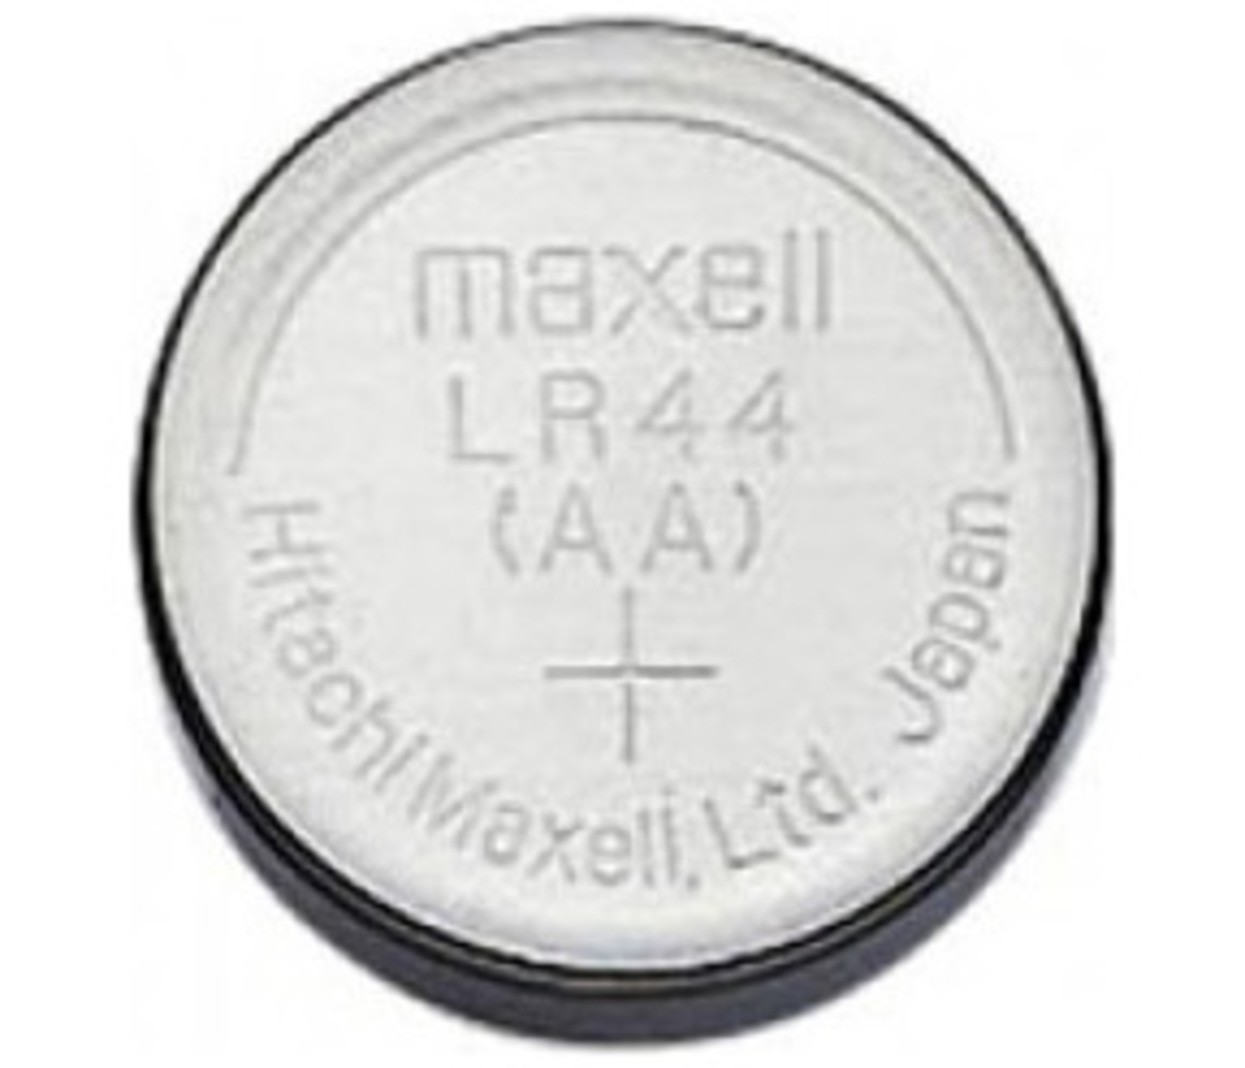 2 x Maxell LR44 gumbna alkalna baterija